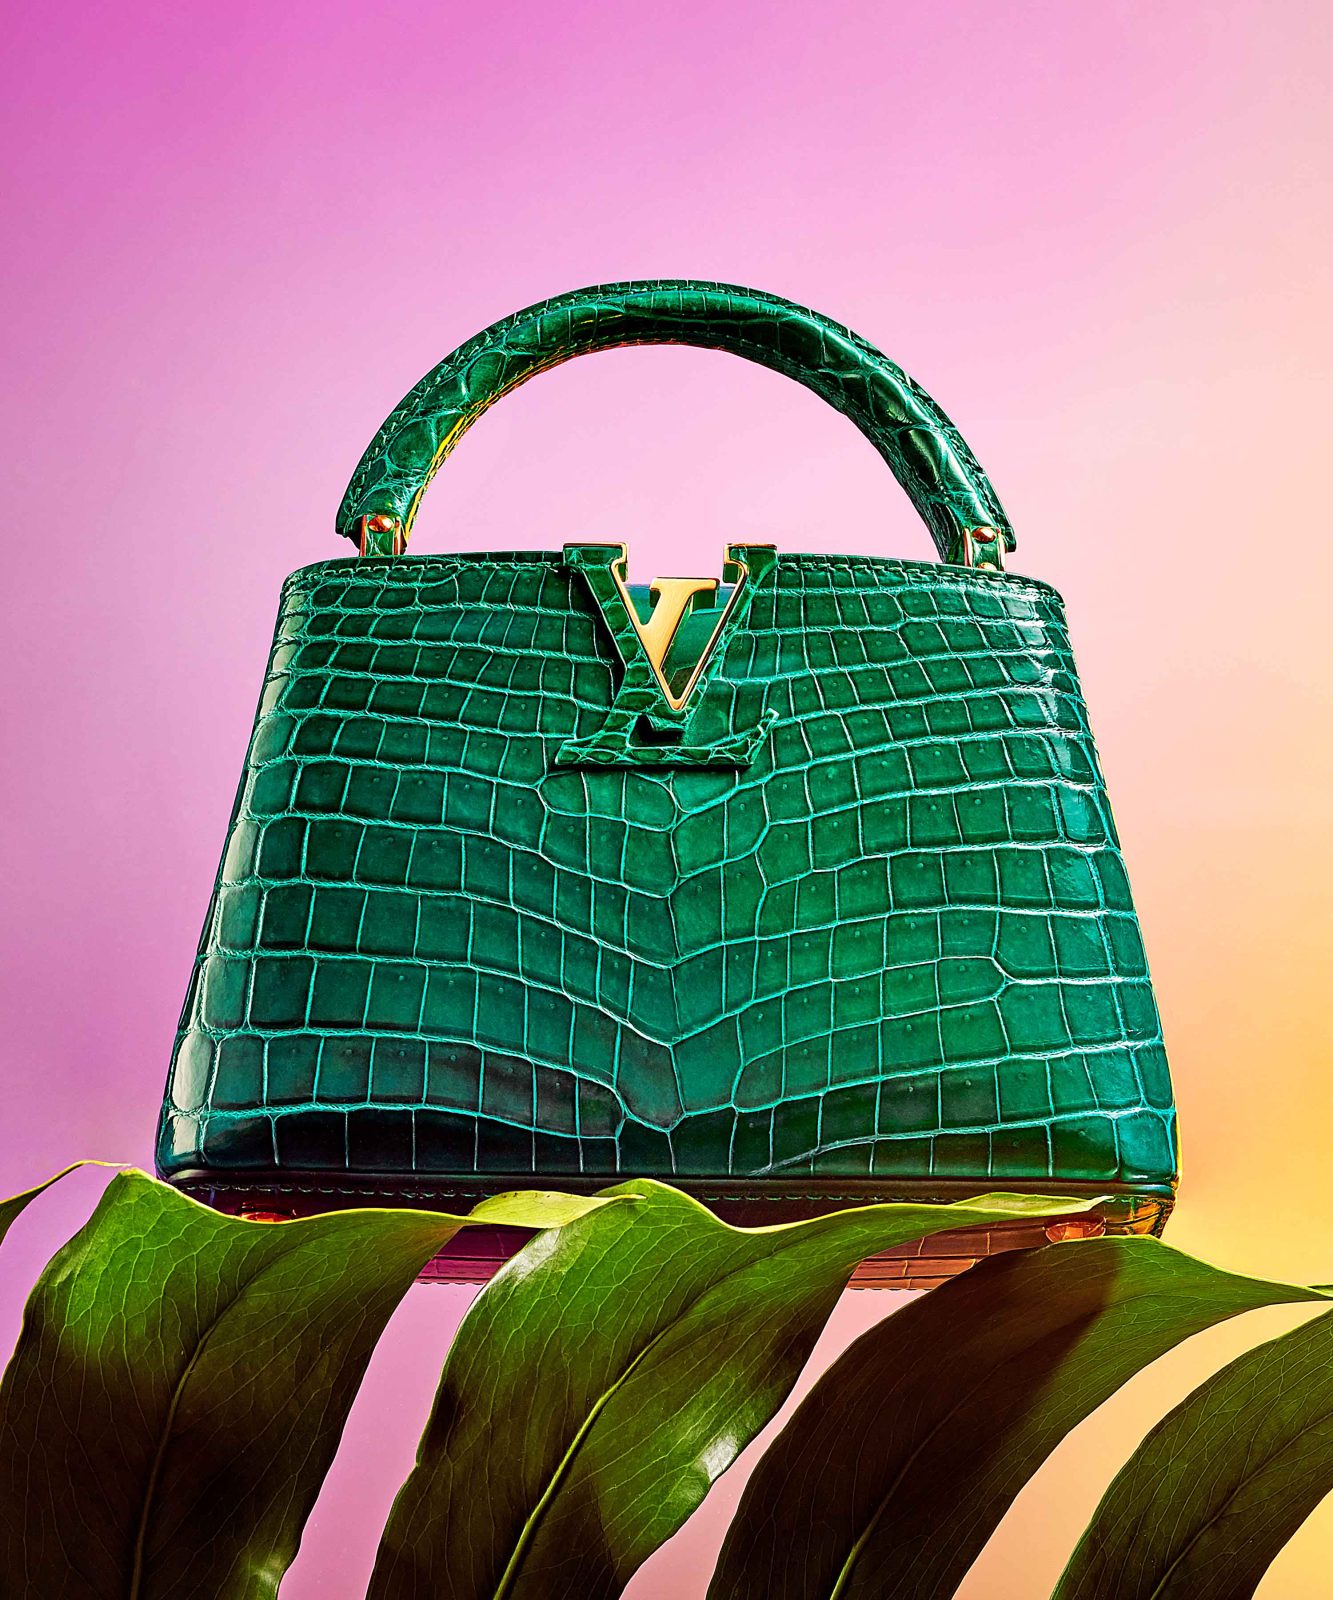 Haute Living's Exclusive Editorial Featuring Louis Vuitton's Signature Handbags